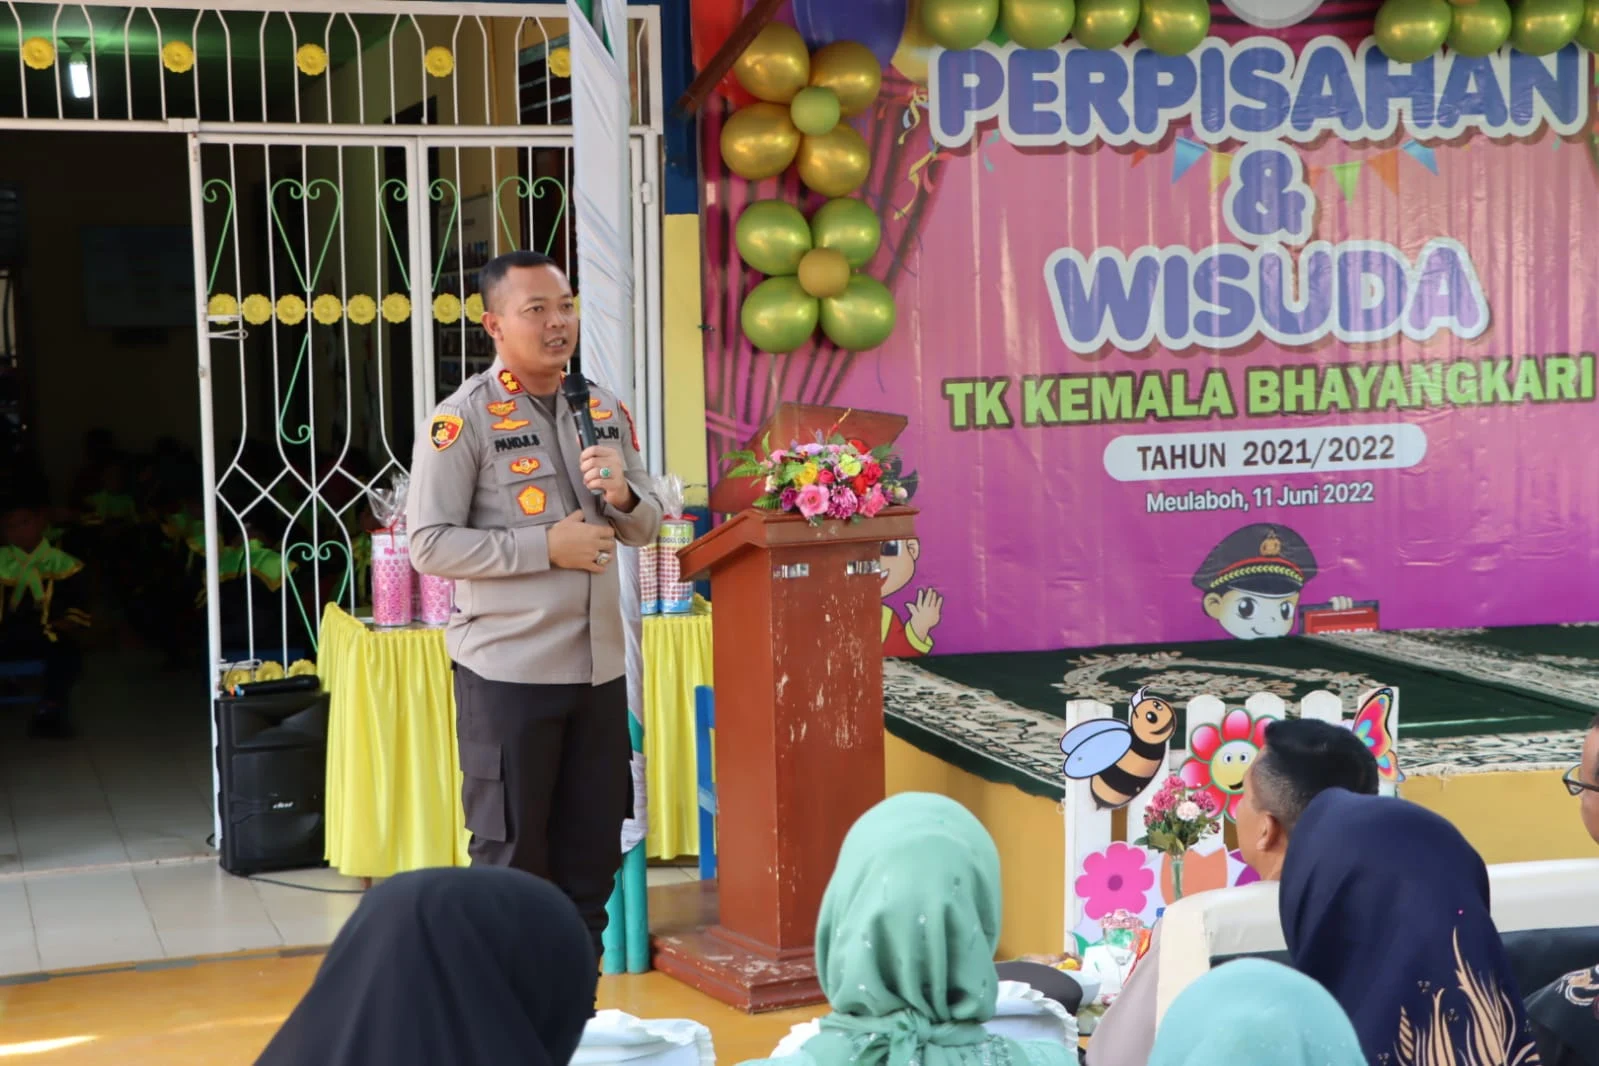 Kapolres Hadiri Acara Perpisahan dan Wisuda TK Keumala Bhayangkari Cabang Aceh Barat